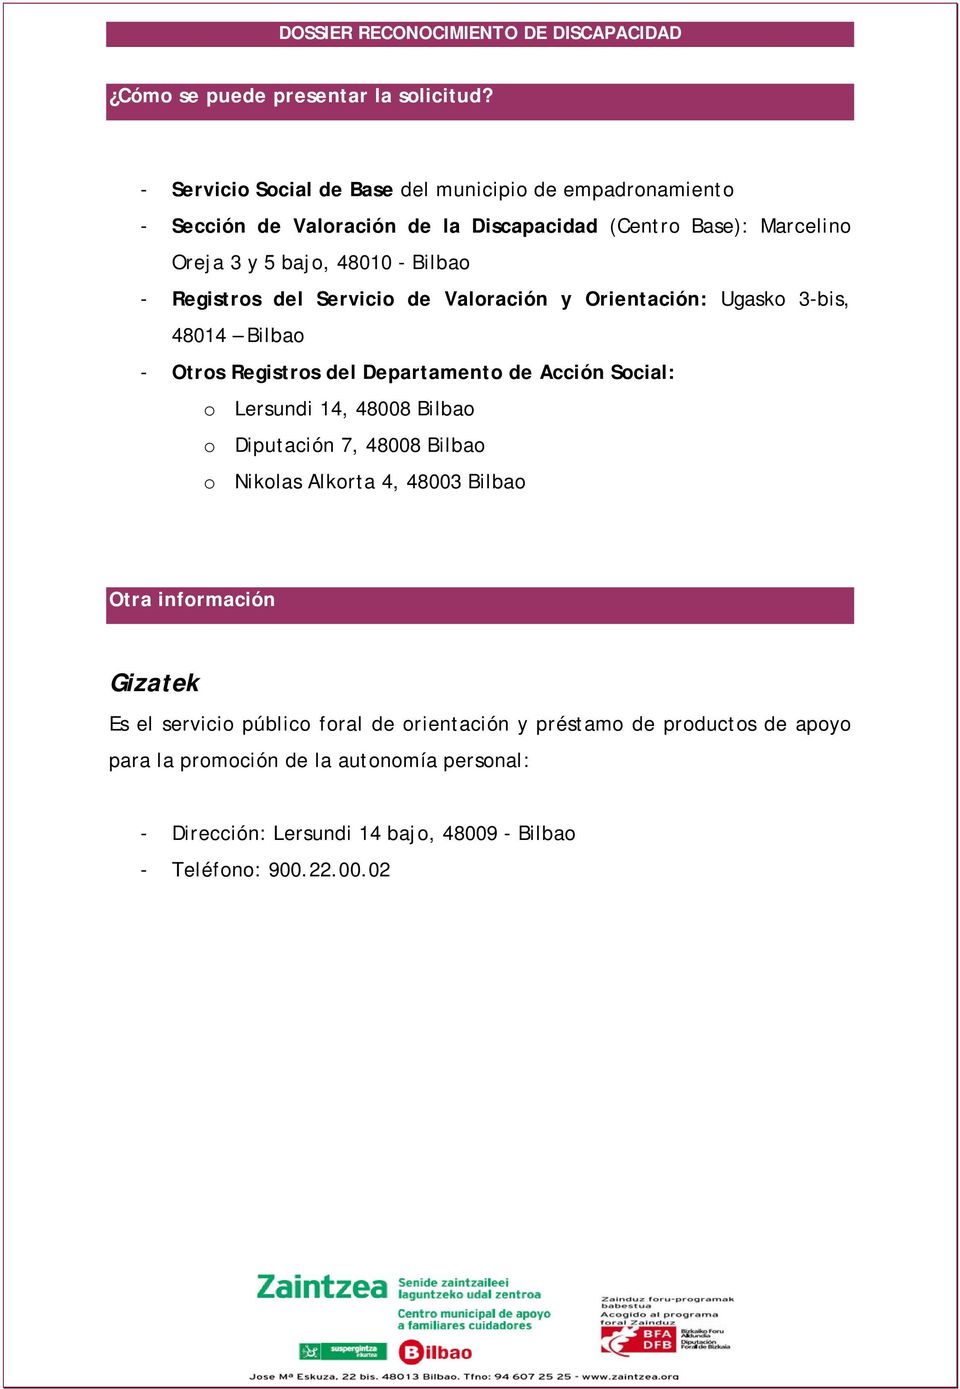 - Registros del Servicio de Valoración y Orientación: Ugasko 3-bis, 48014 Bilbao - Otros Registros del Departamento de Acción Social: o Lersundi 14, 48008